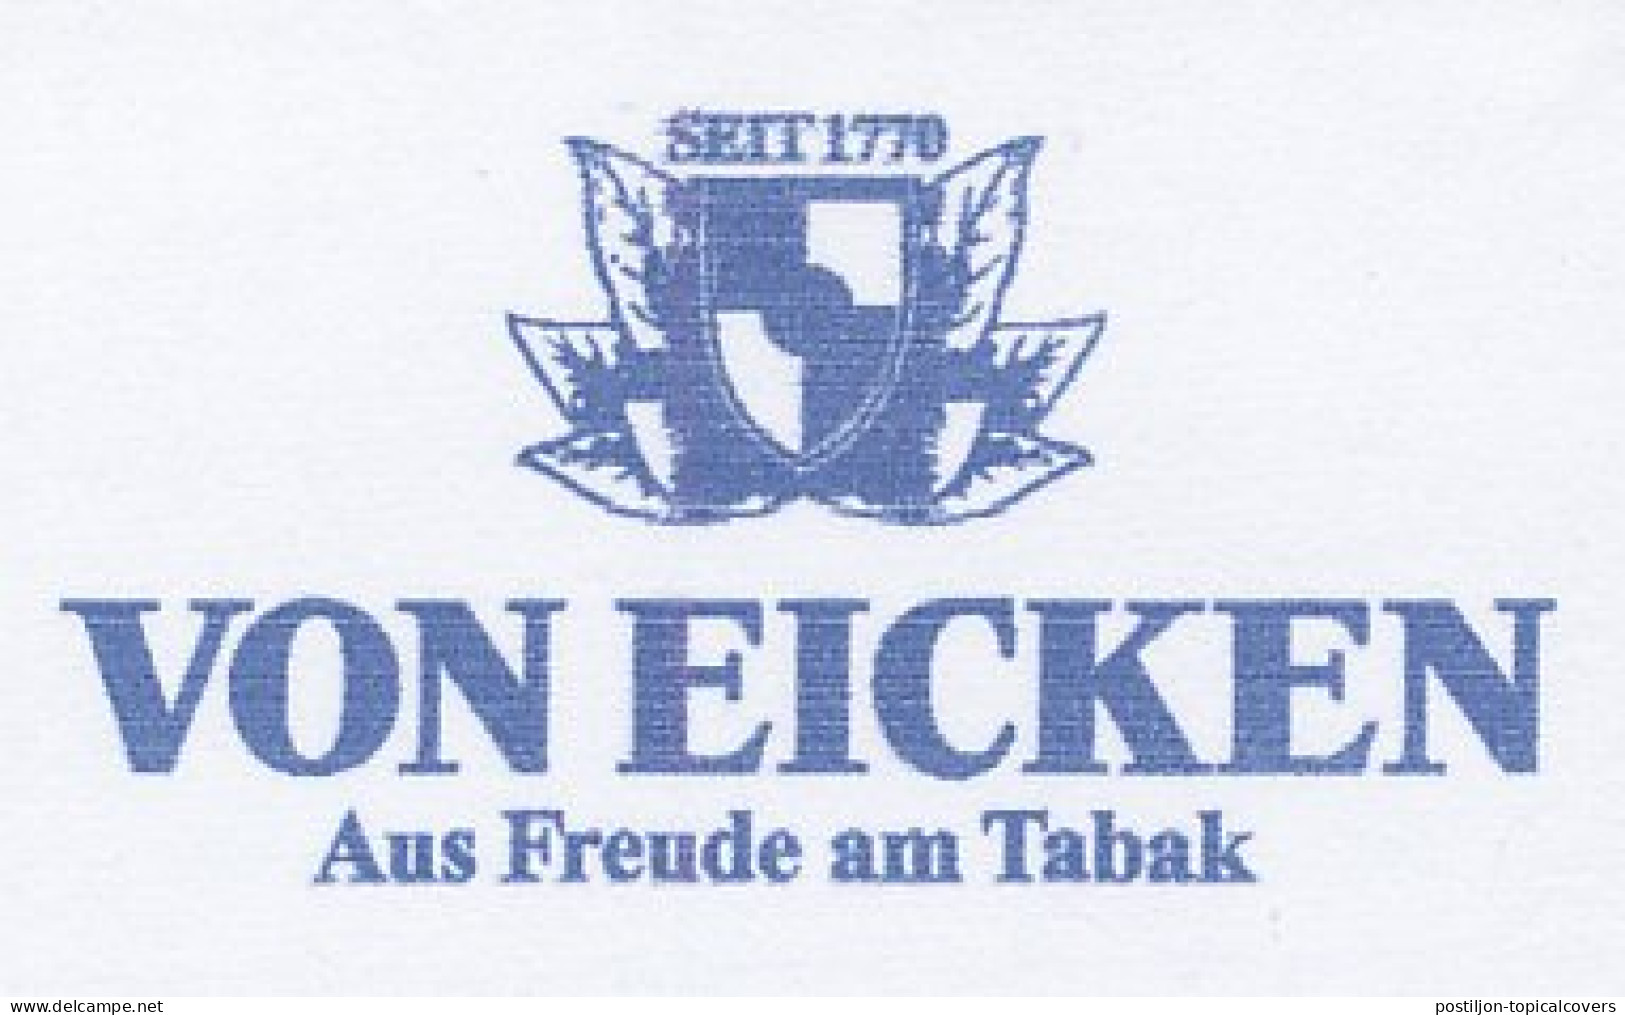 Meter Cut Germany 2008 Tobacco Leaf - Von Eicken - Tobacco